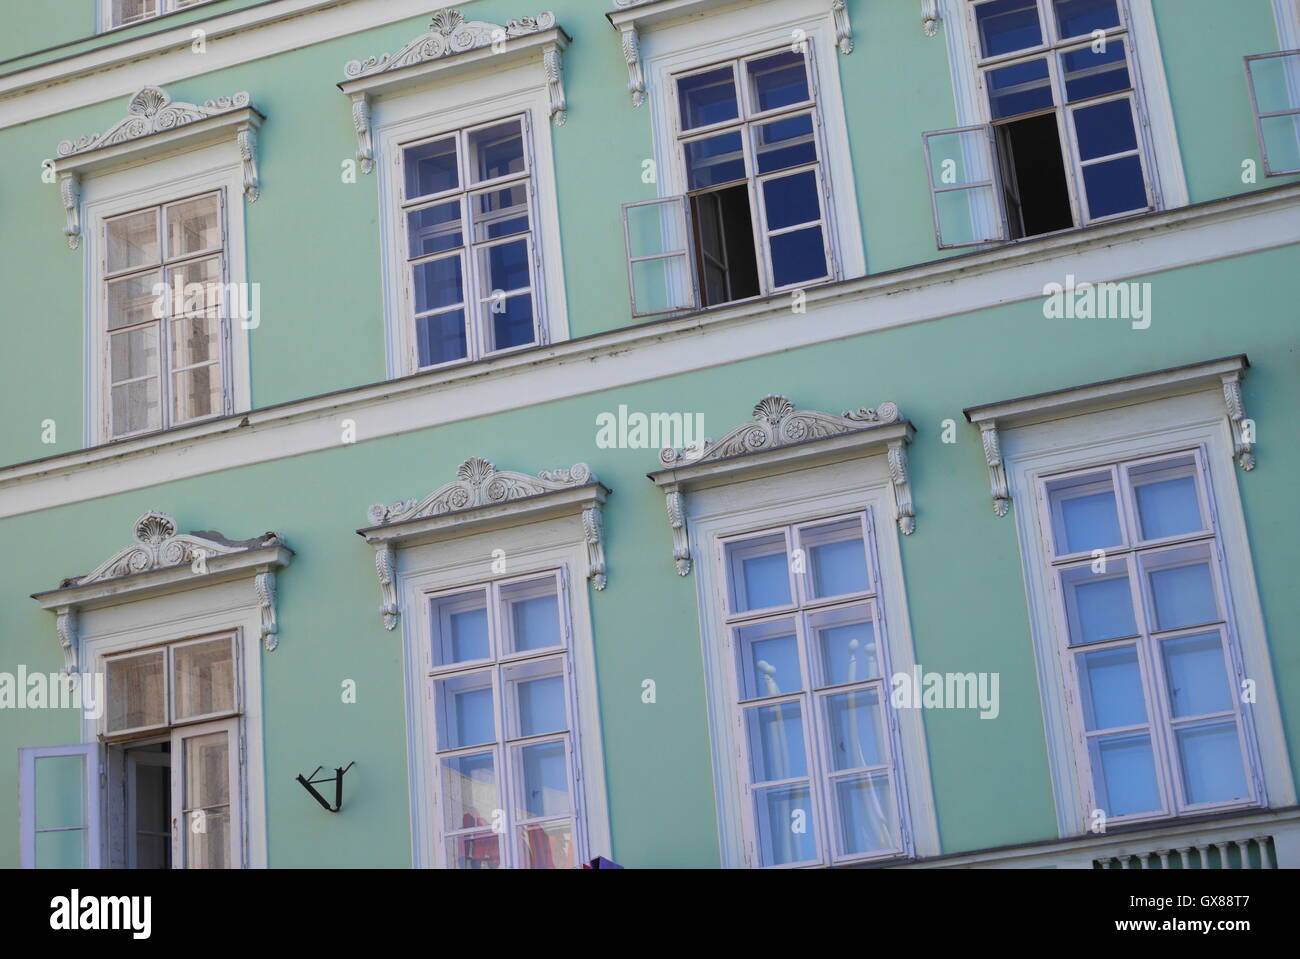 Façade d'un immeuble donnant sur le Danube, Budapest, Hongrie Banque D'Images